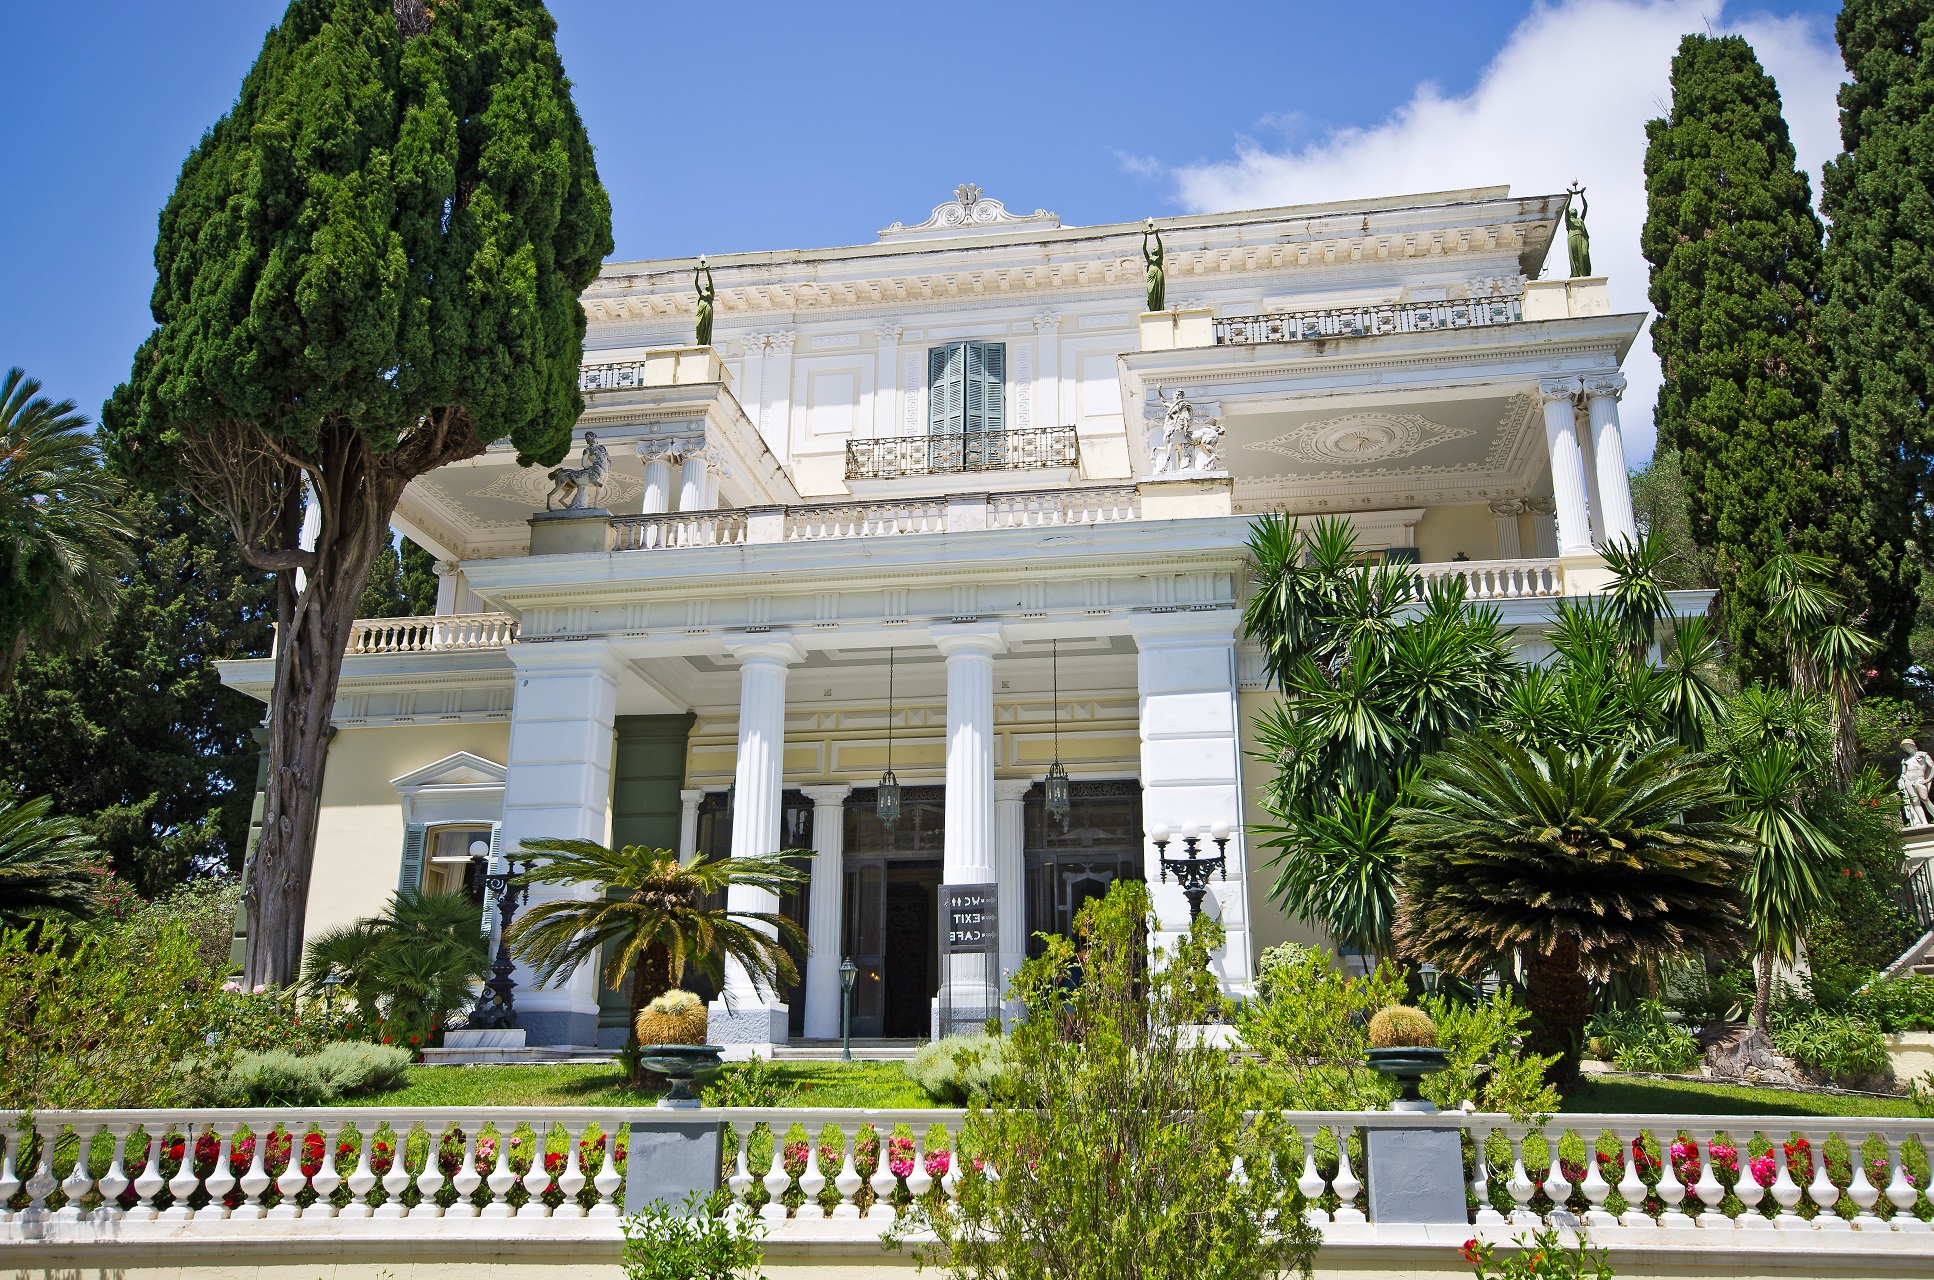 Achillion palace on Corfu island, Greece_shutterstock_268928156